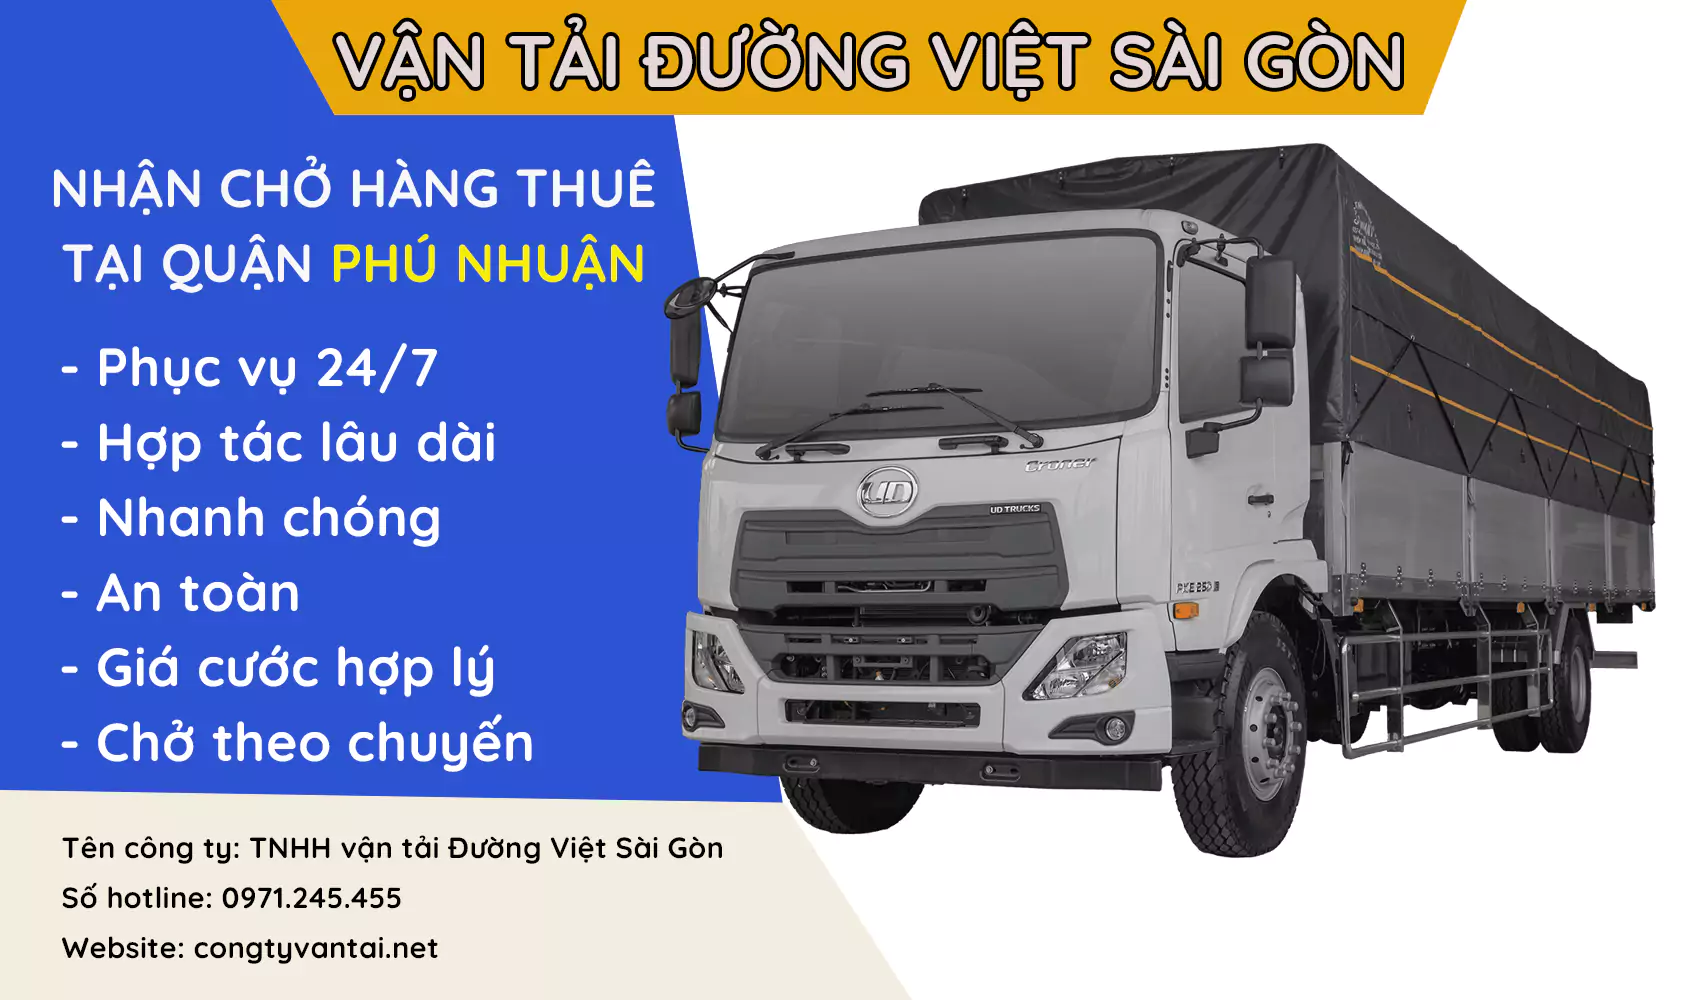 Dịch vụ xe tải nhận chở hàng thuê giá rẻ tại Quận Phú Nhuận